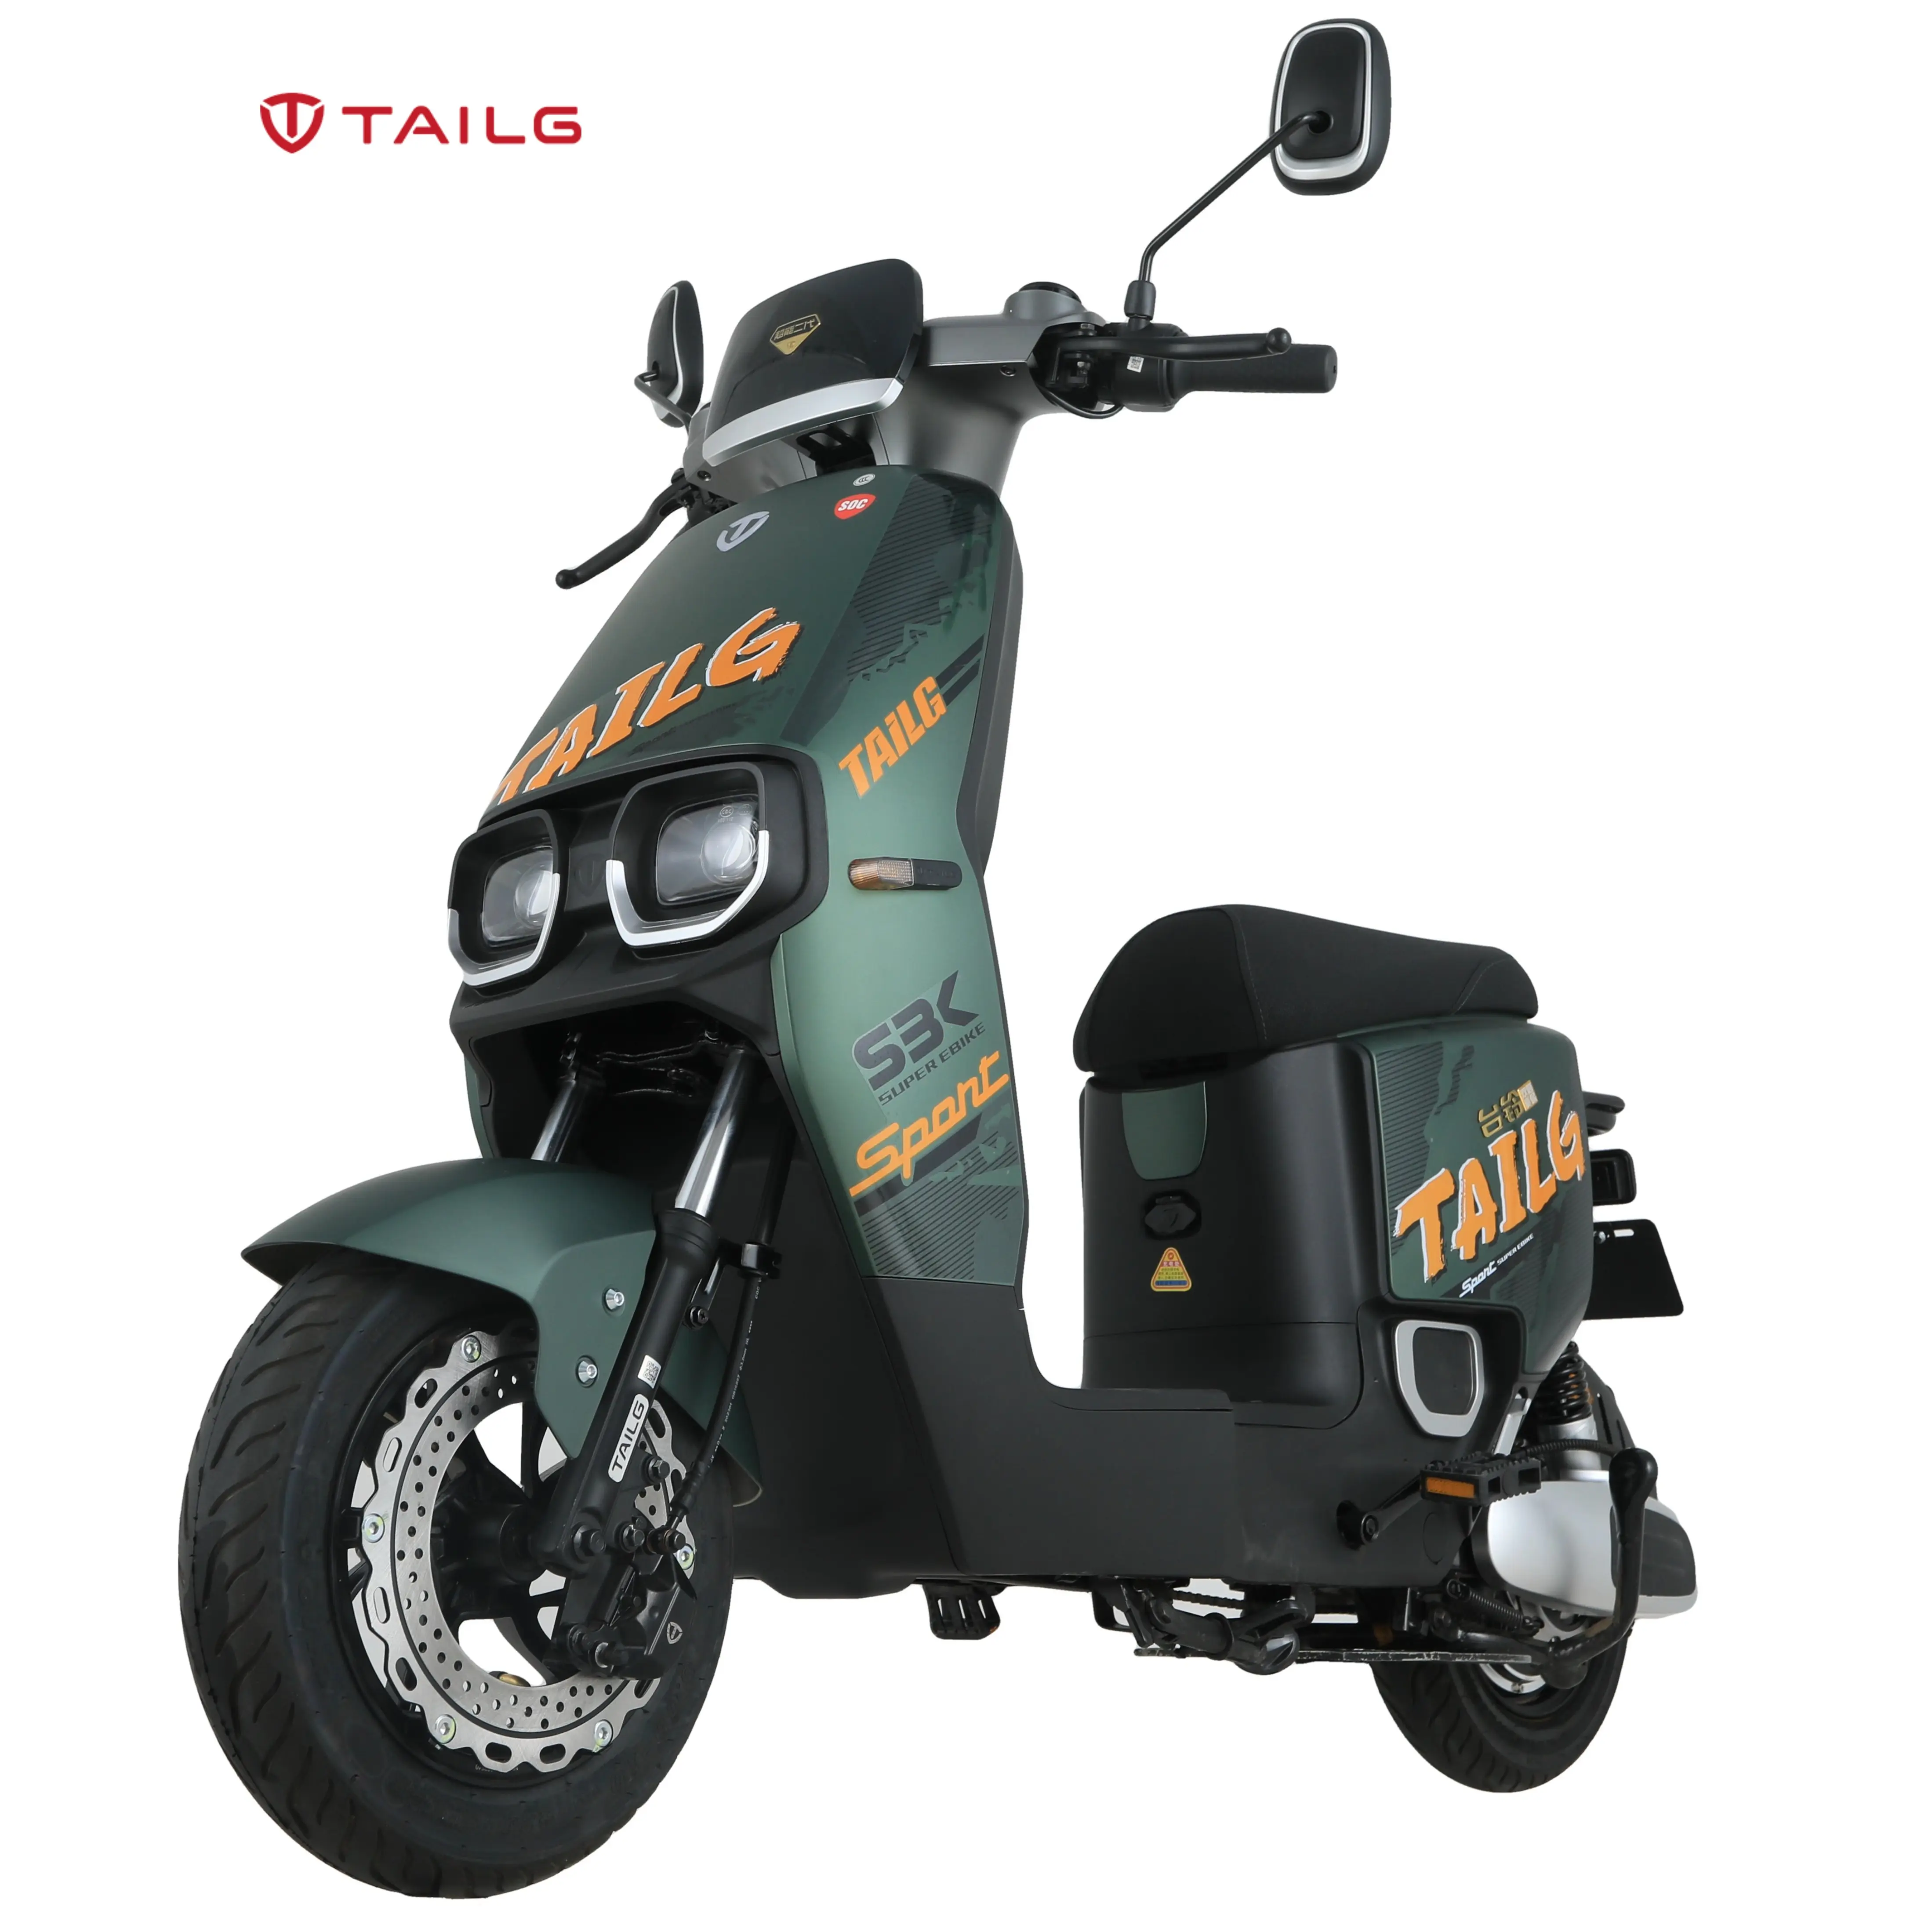 TAILG Batterie au lithium de haute qualité 2 places Sport Vespa Scooter Moto électrique Moto pour adultes